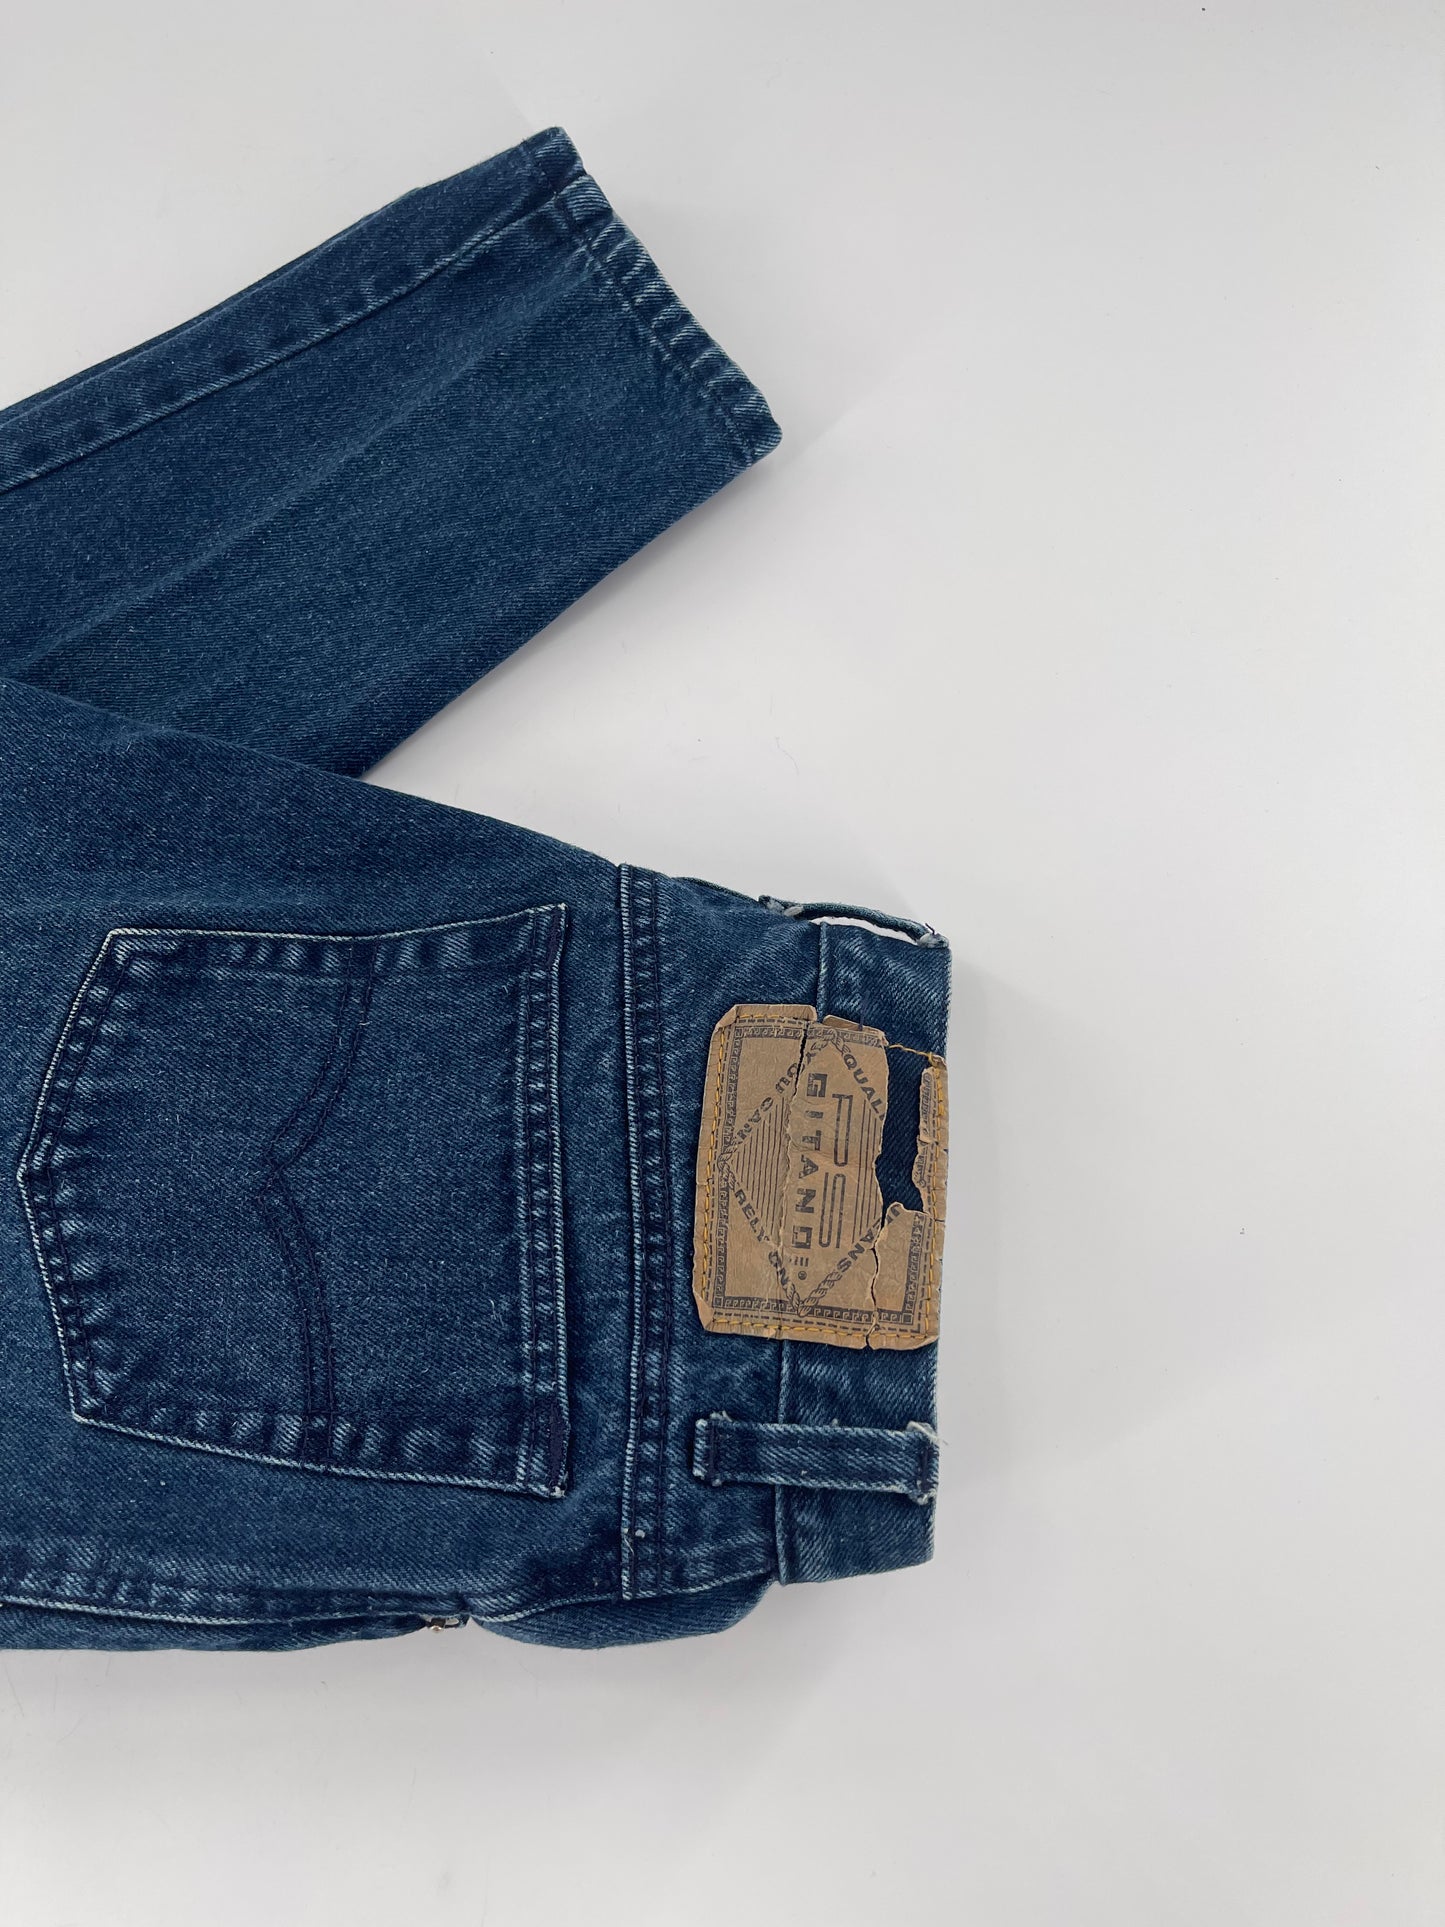 P S. Gitano 80’s Blue Jeans (Size 10)